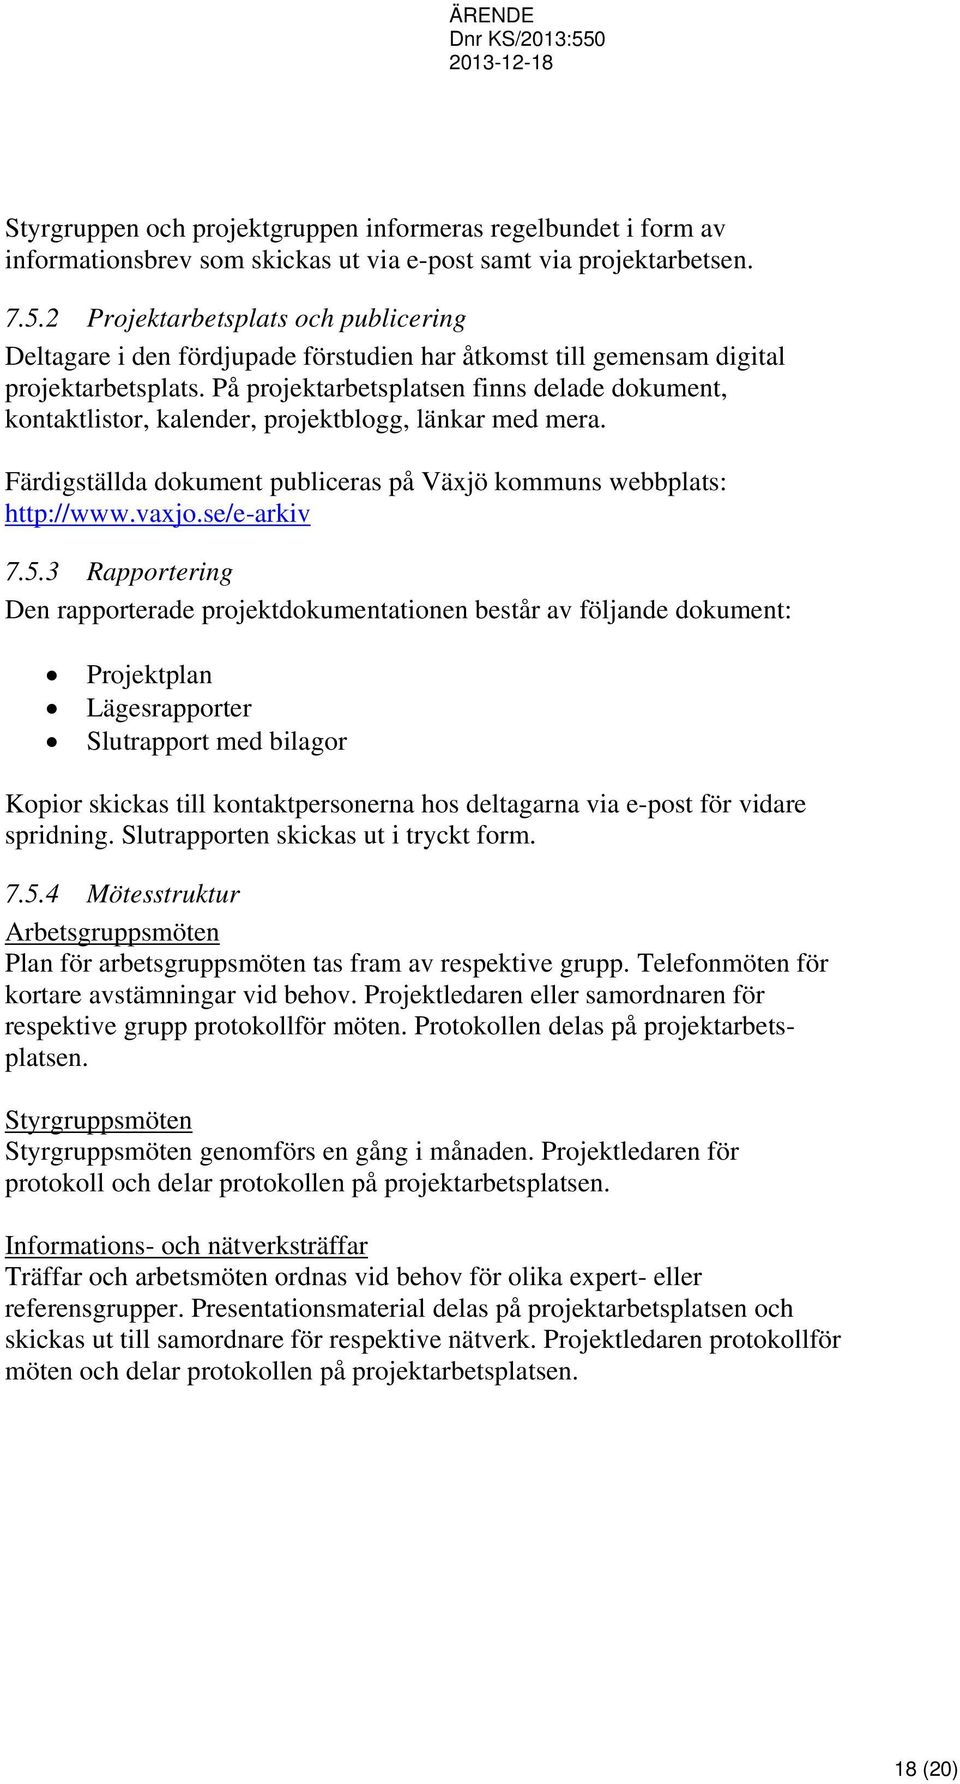 På projektarbetsplatsen finns delade dokument, kontaktlistor, kalender, projektblogg, länkar med mera. Färdigställda dokument publiceras på Växjö kommuns webbplats: http://www.vaxjo.se/e-arkiv 7.5.